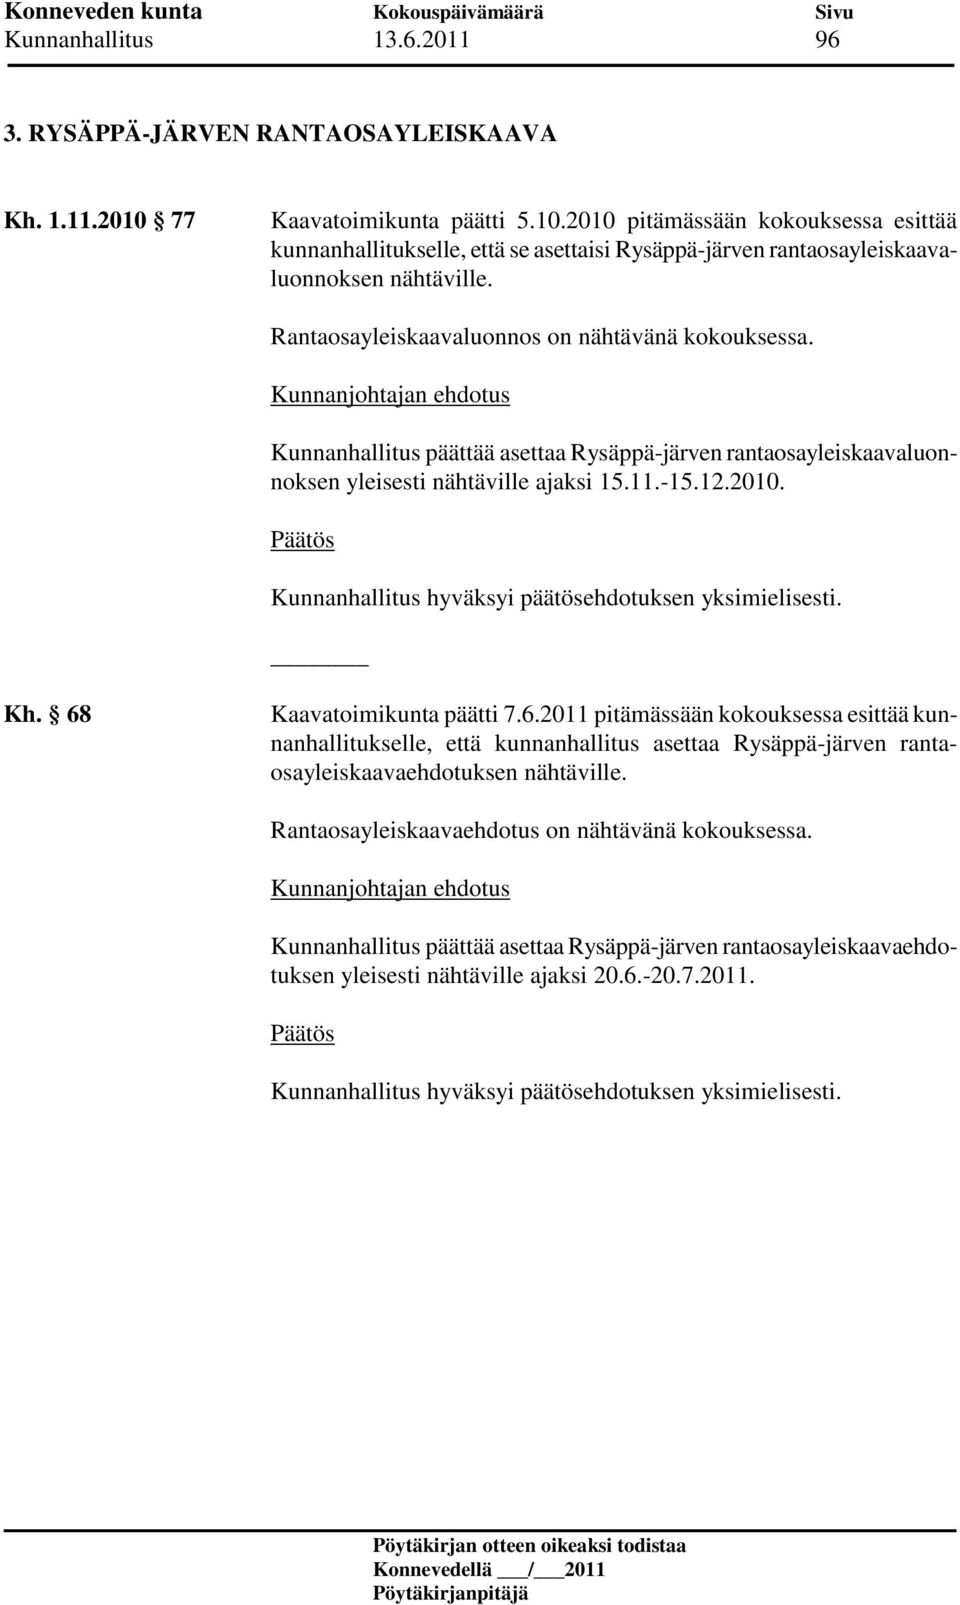 Rantaosayleiskaavaluonnos on nähtävänä kokouksessa. Kunnanhallitus päättää asettaa Rysäppä-järven rantaosayleiskaavaluonnoksen yleisesti nähtäville ajaksi 15.11.-15.12.2010. Kh.